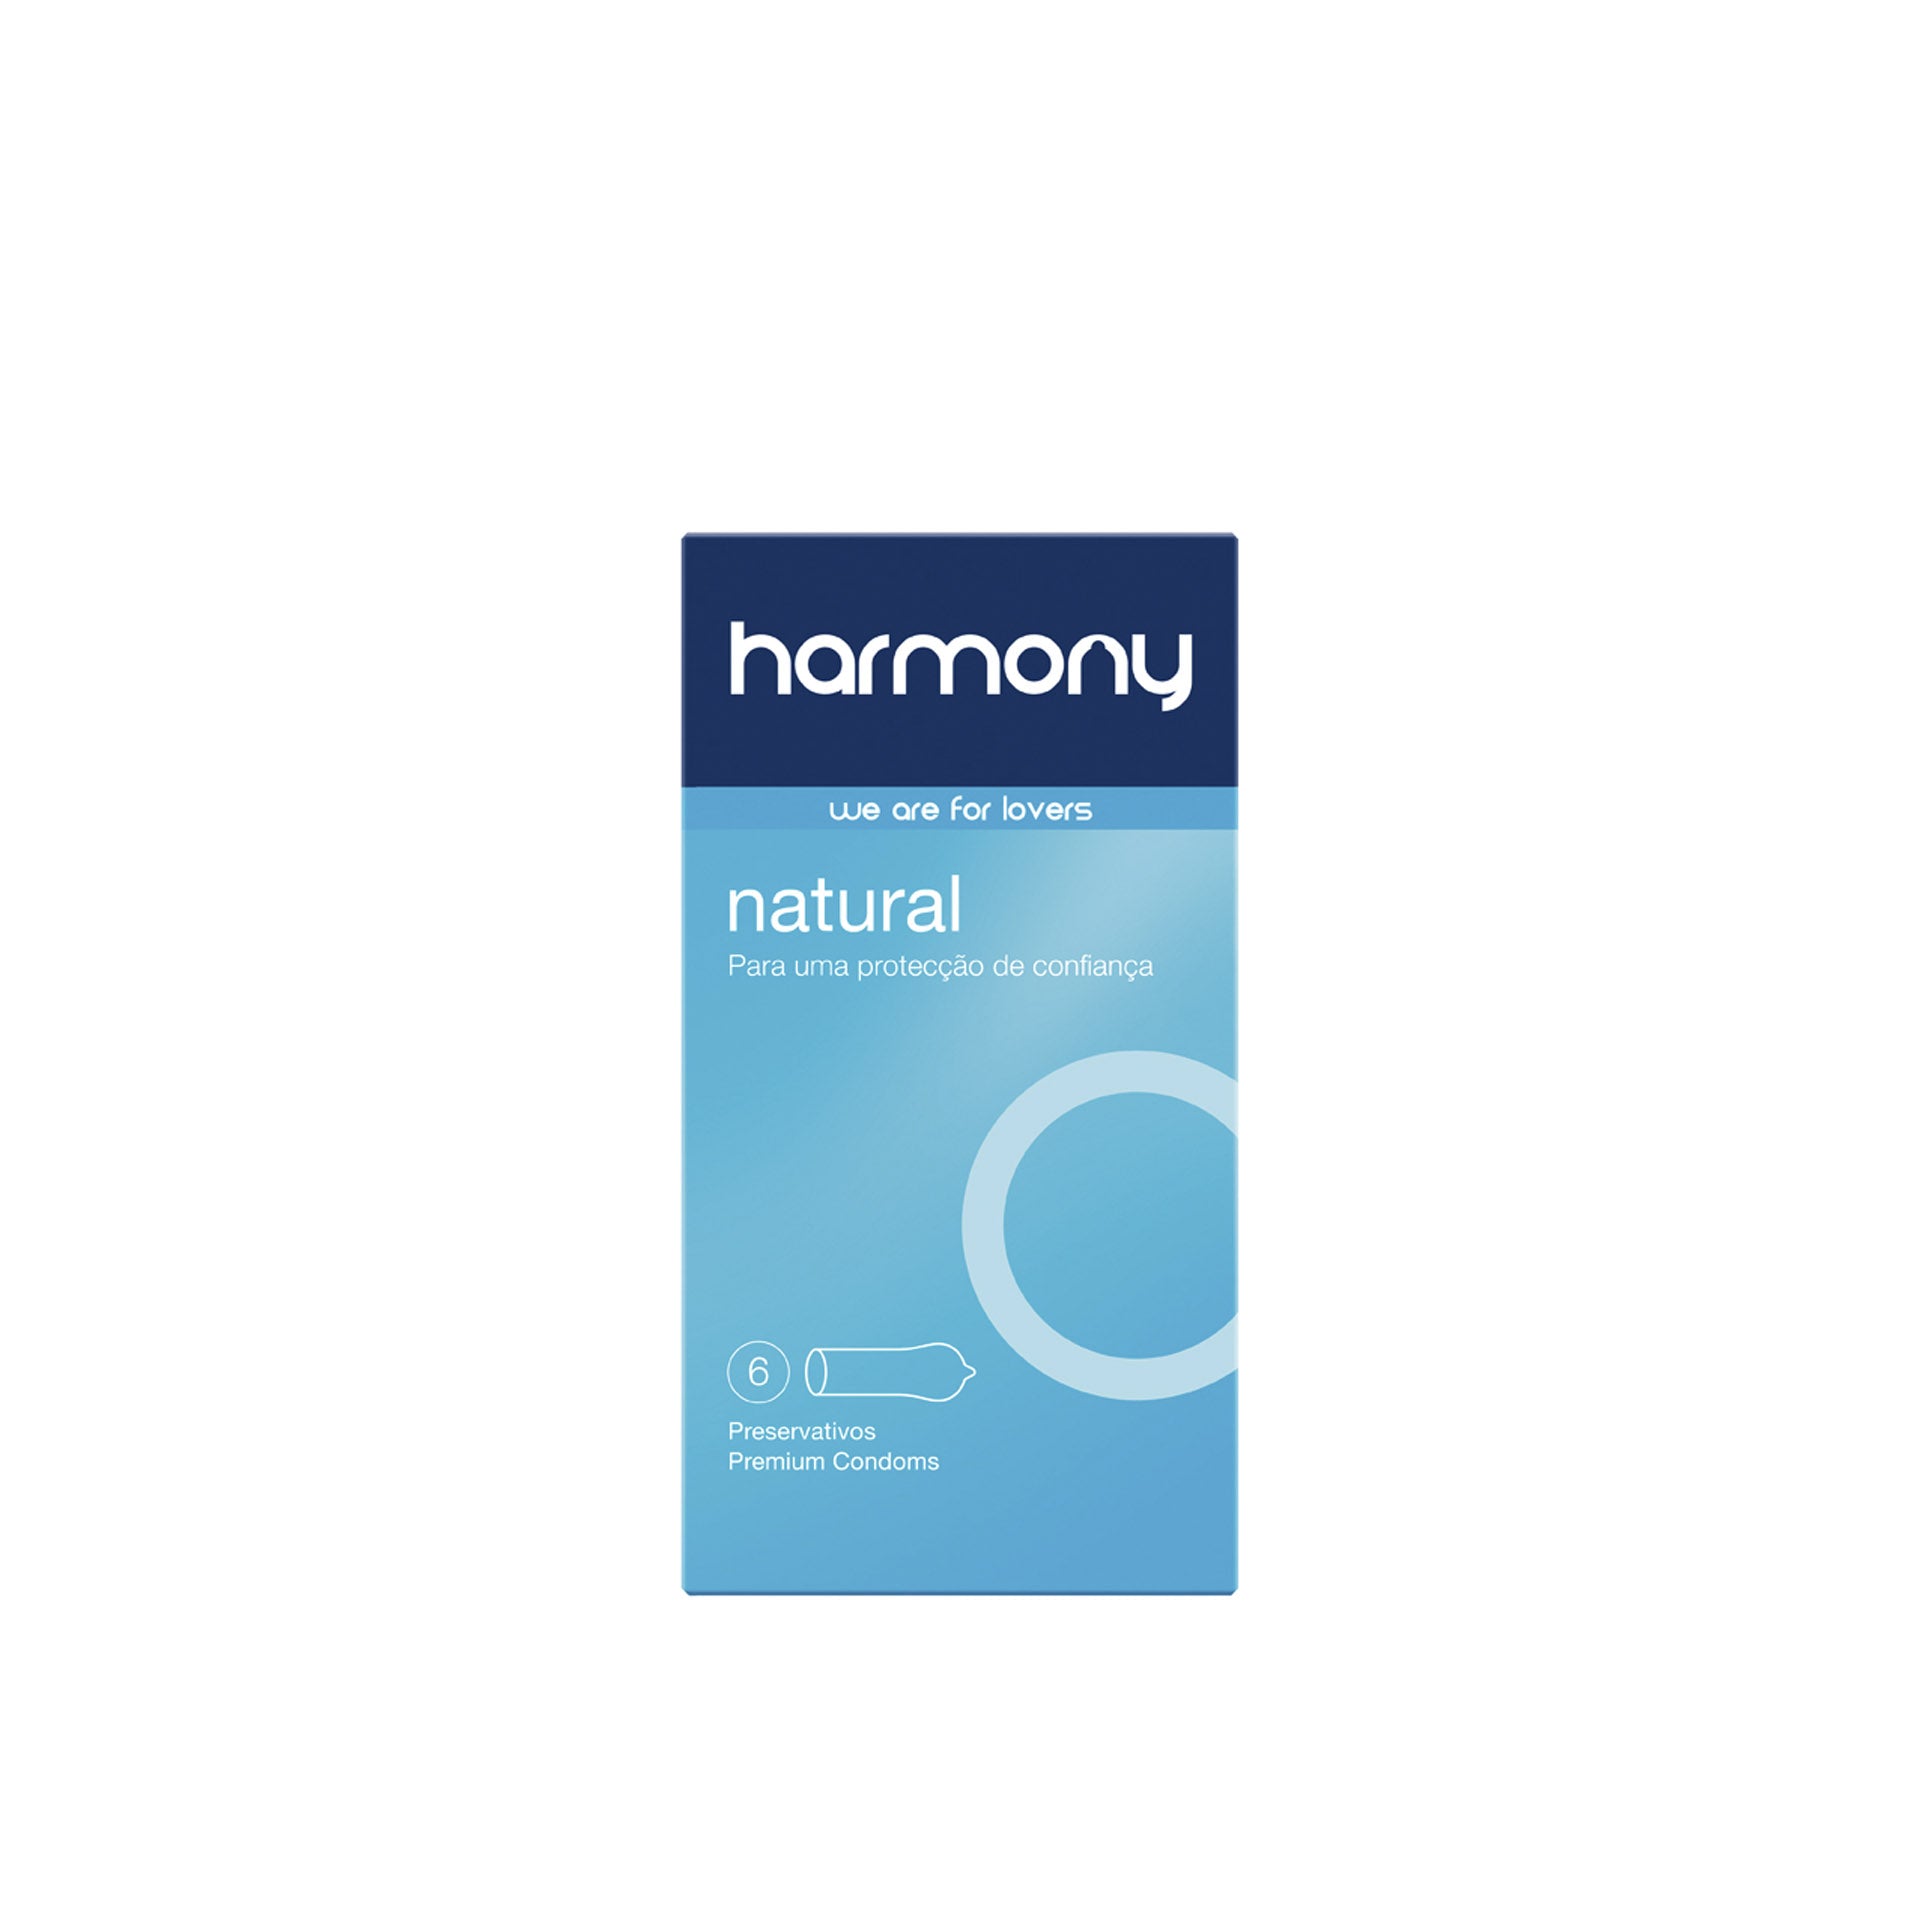 Harmony Preservativos Natural 6 un